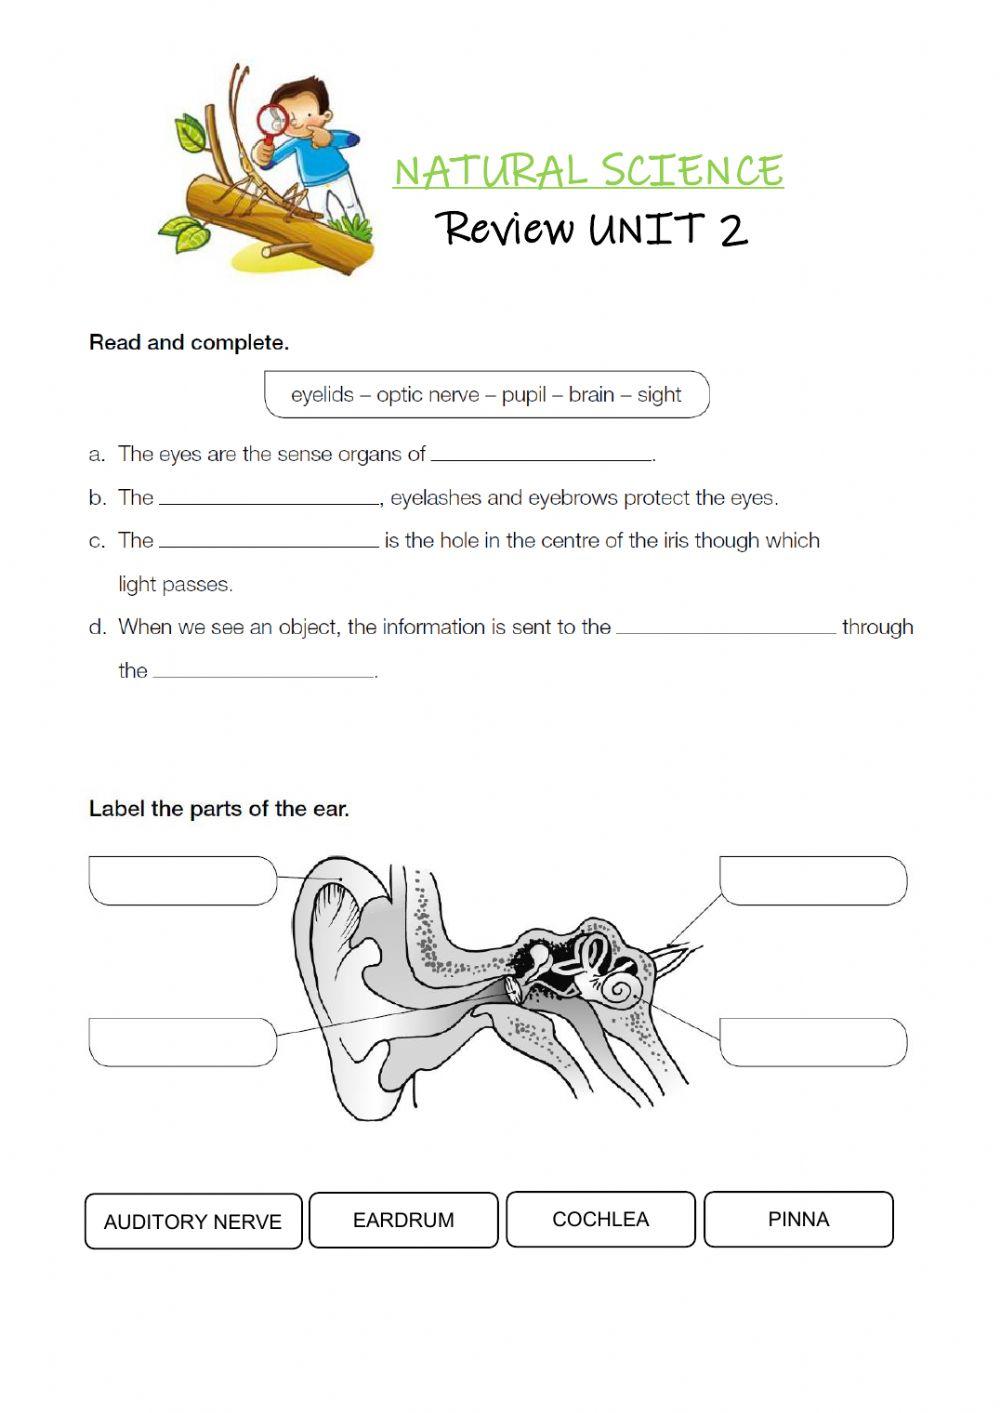 Review unit 2